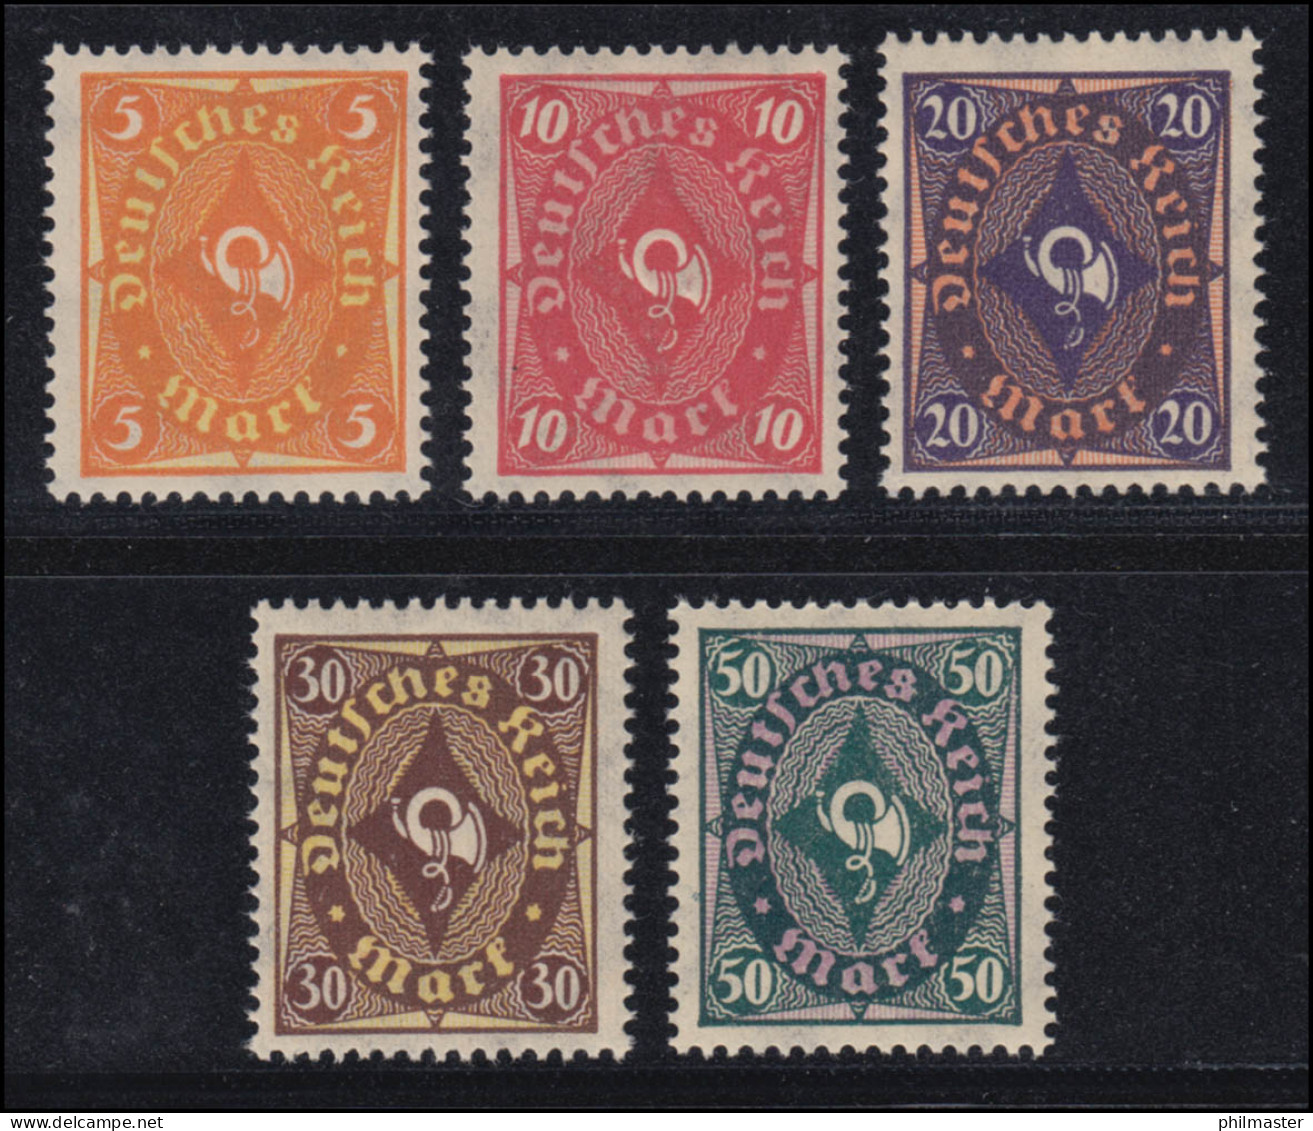 205-209 Posthorn Zweifarbig 1922, 5 Werte, Satz Komplett ** Postfrisch - Unused Stamps